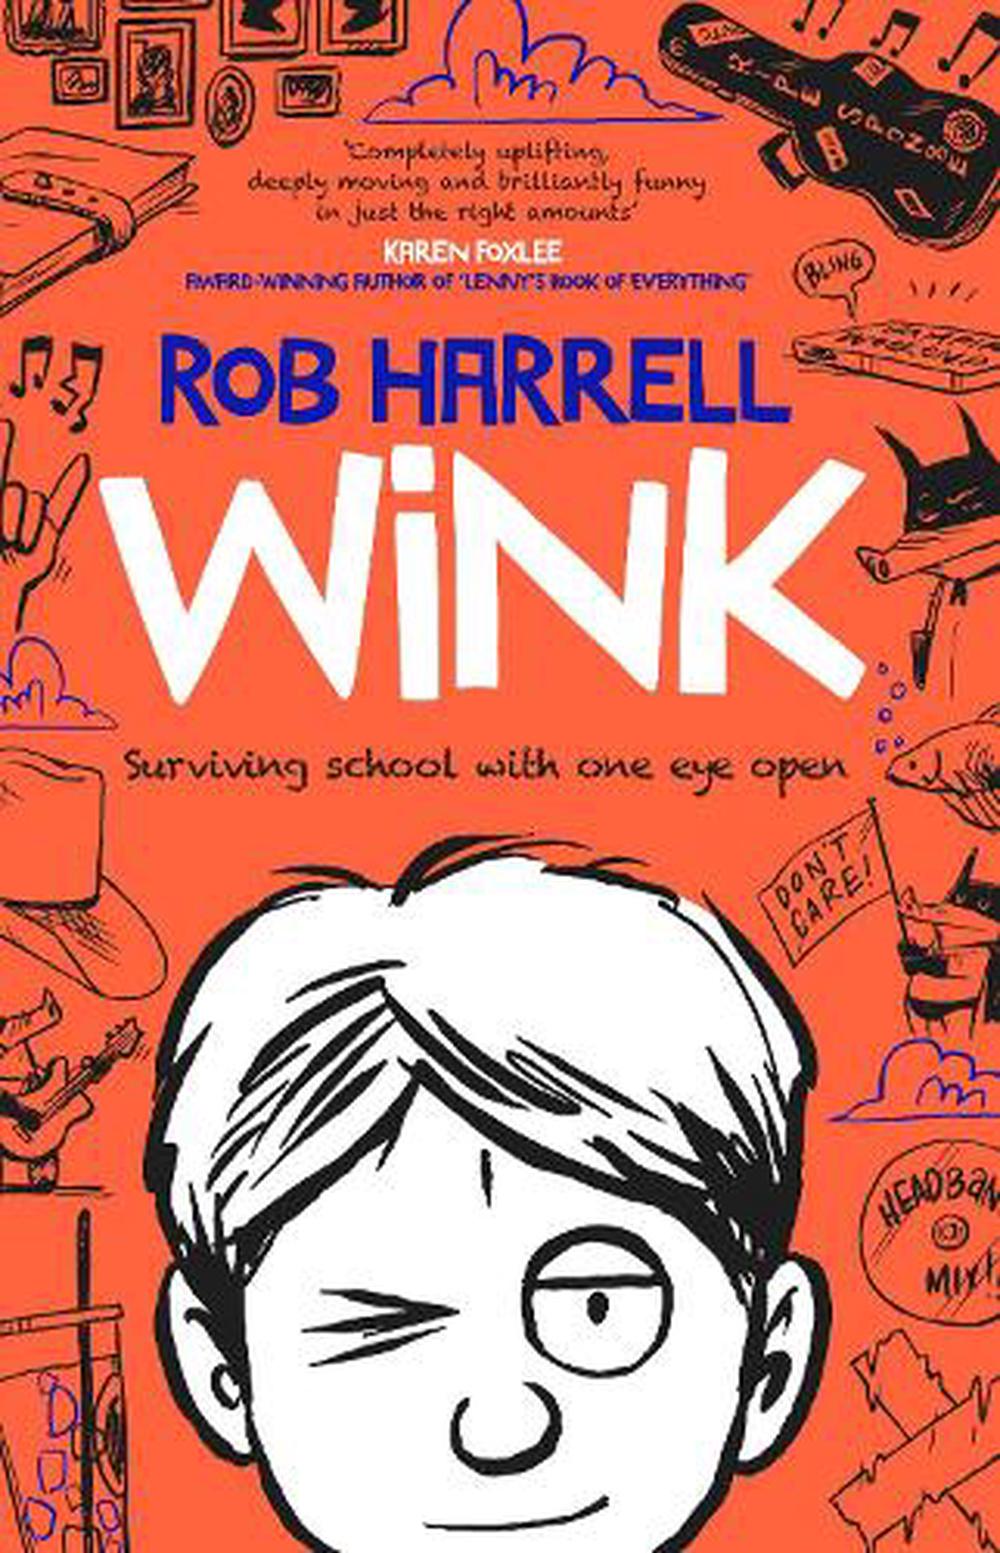 wink by rob harrell summary